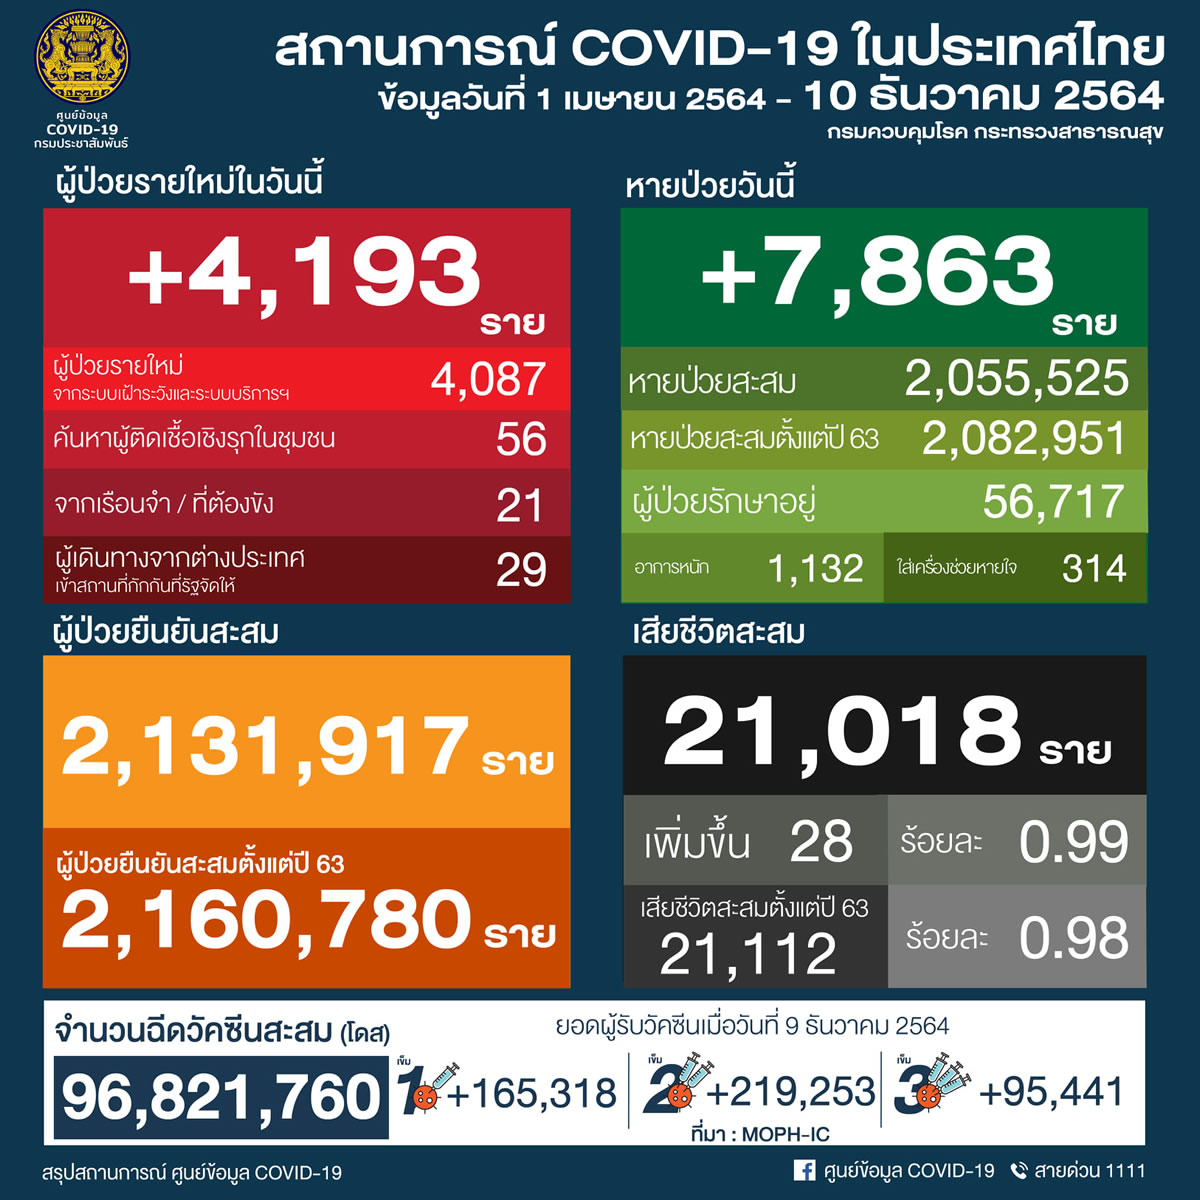 タイ 4,193人陽性 28人死亡／バンコク 629人陽性 2人死亡／チェンマイ 90人陽性［2021年12月10日発表］